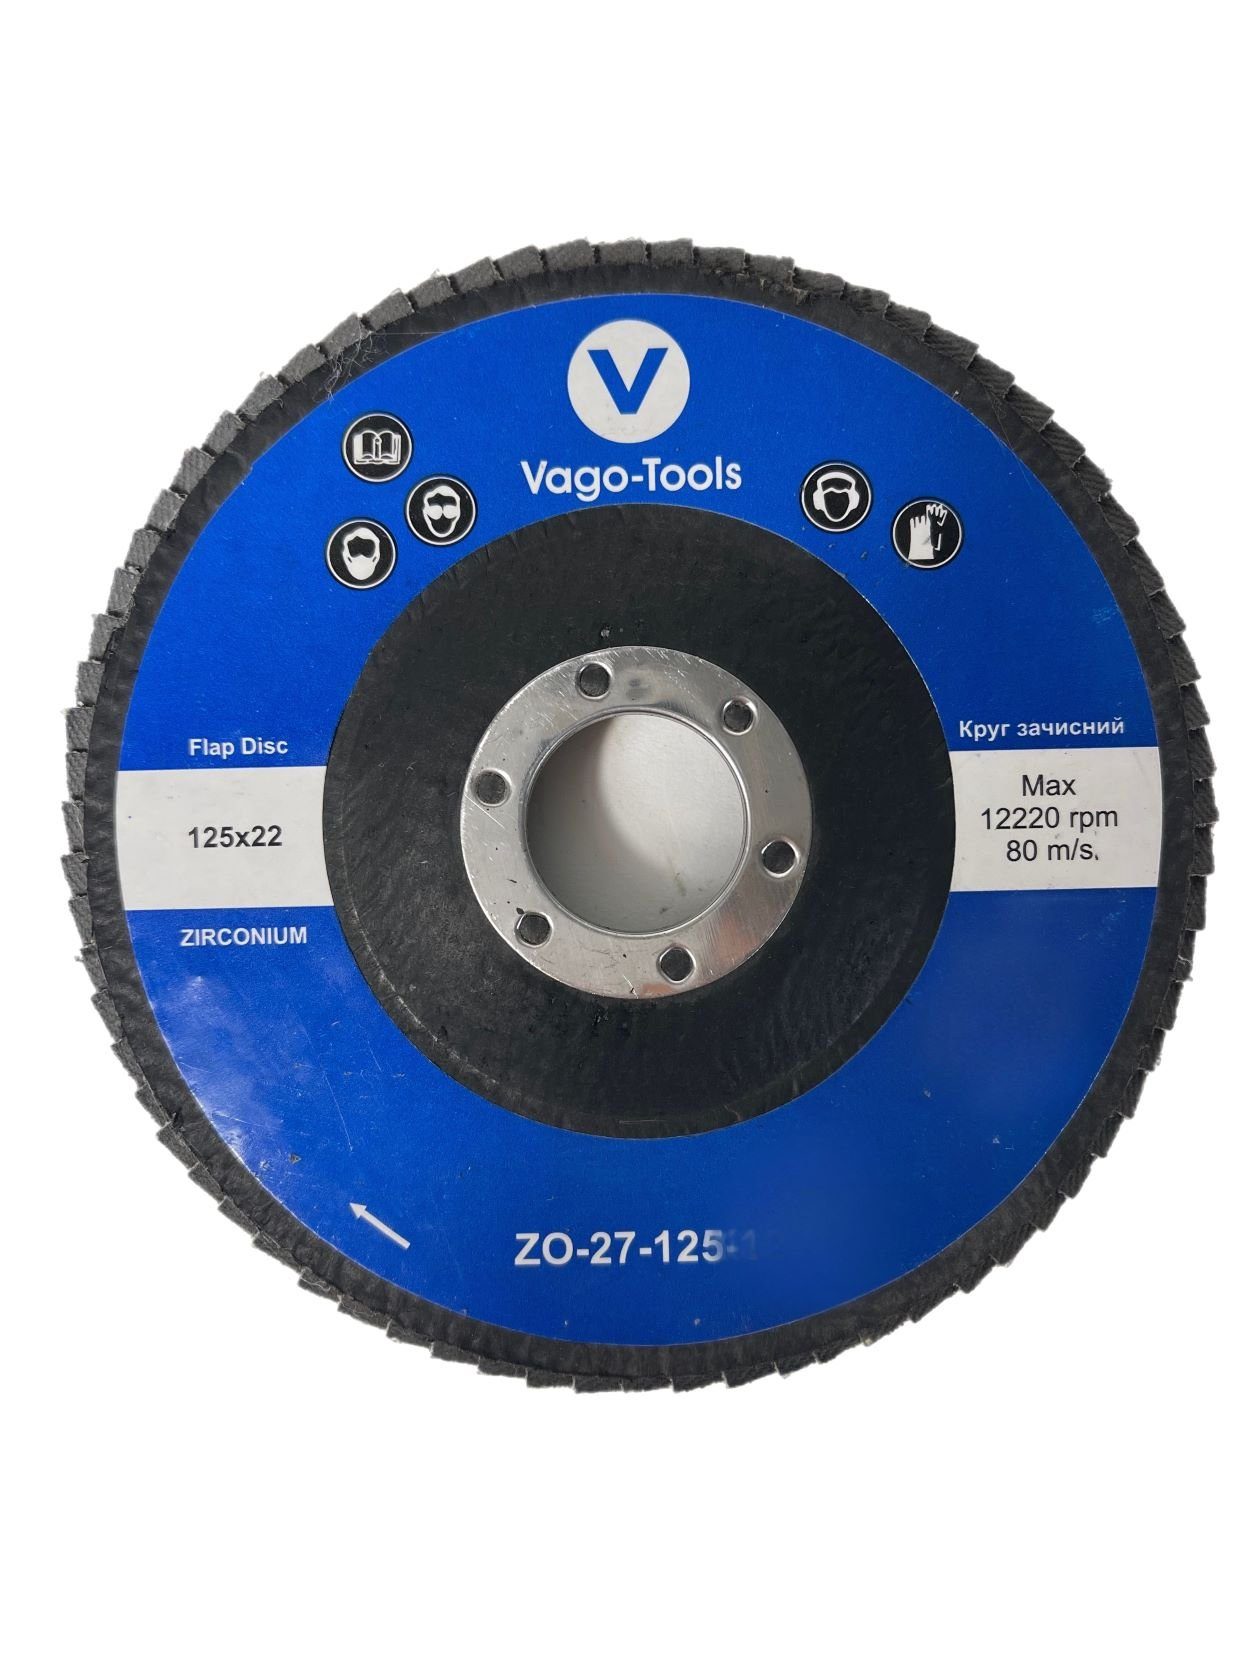 VaGo-Tools Schleifscheibe Fächerschleifscheiben 125mm P36 flach Blau 20x, (Packung)